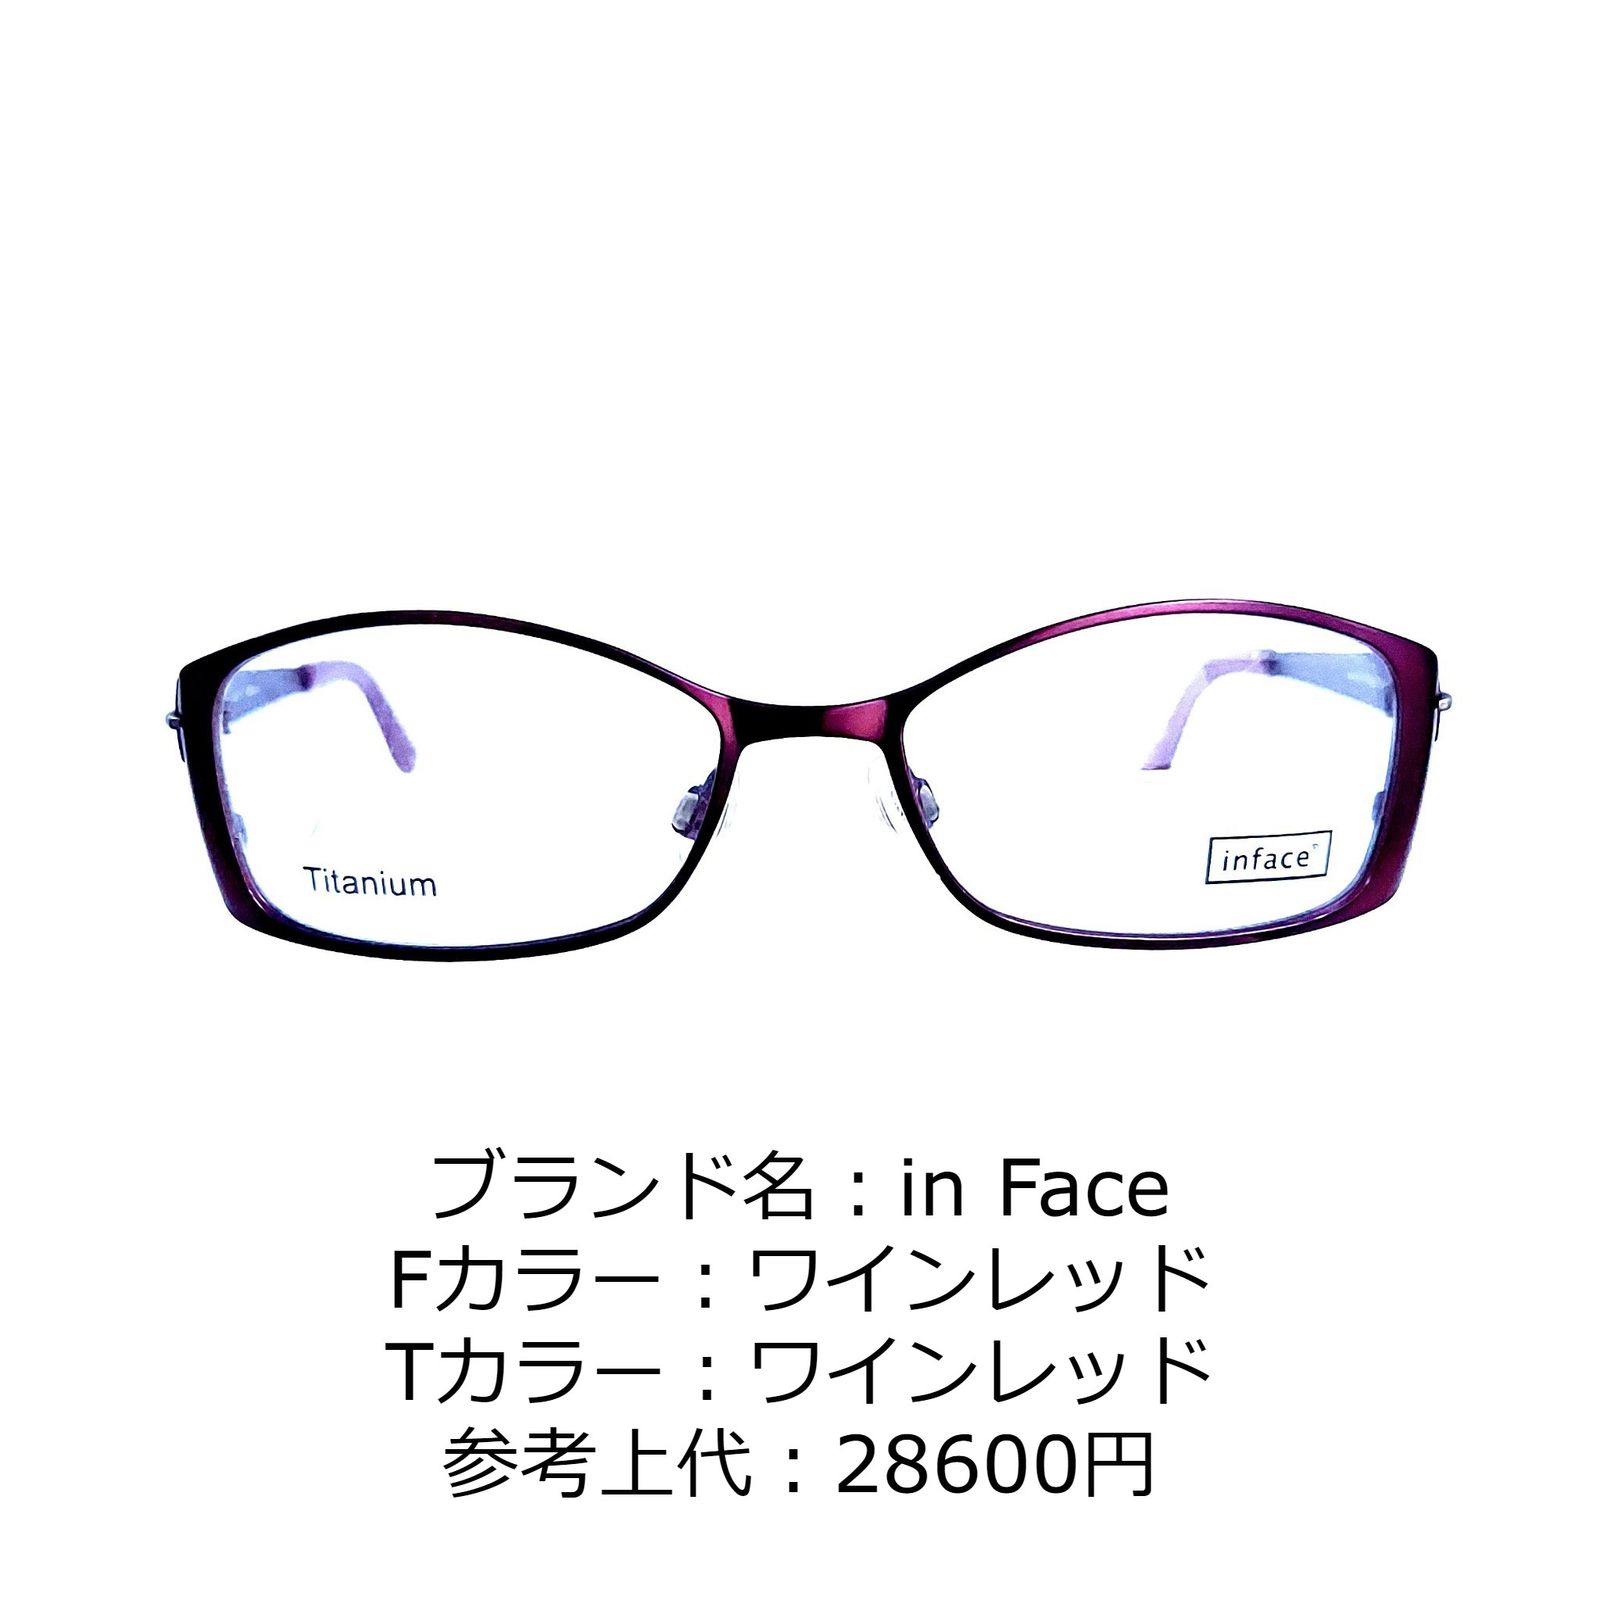 No.2172+メガネ GAP eyewear【度数入り込み価格】-